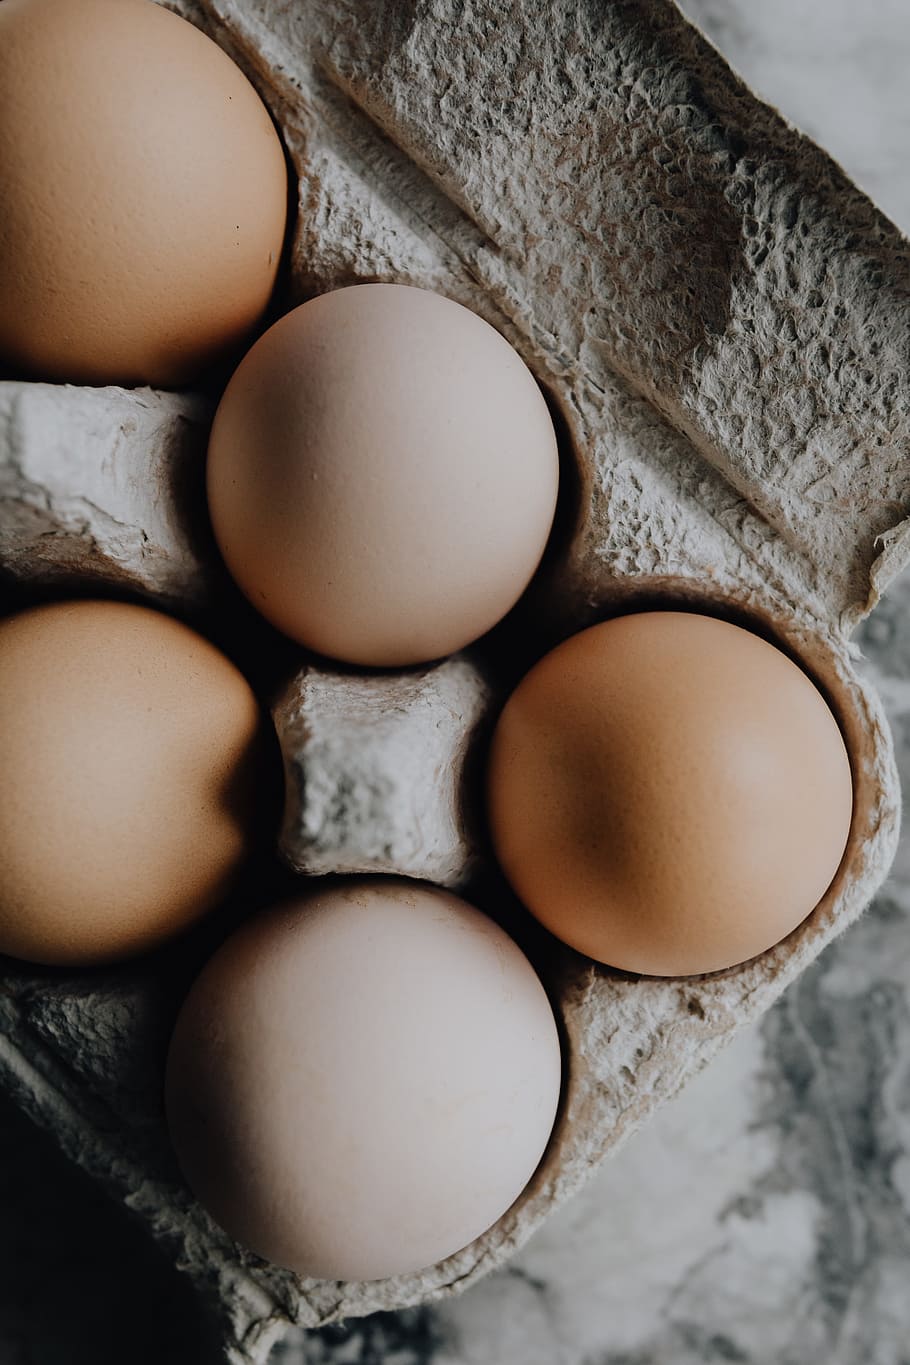 ovos frescos, comida, acima, orgânico, ovos, páscoa, flatlay, configuração plana, ingrediente, ovo